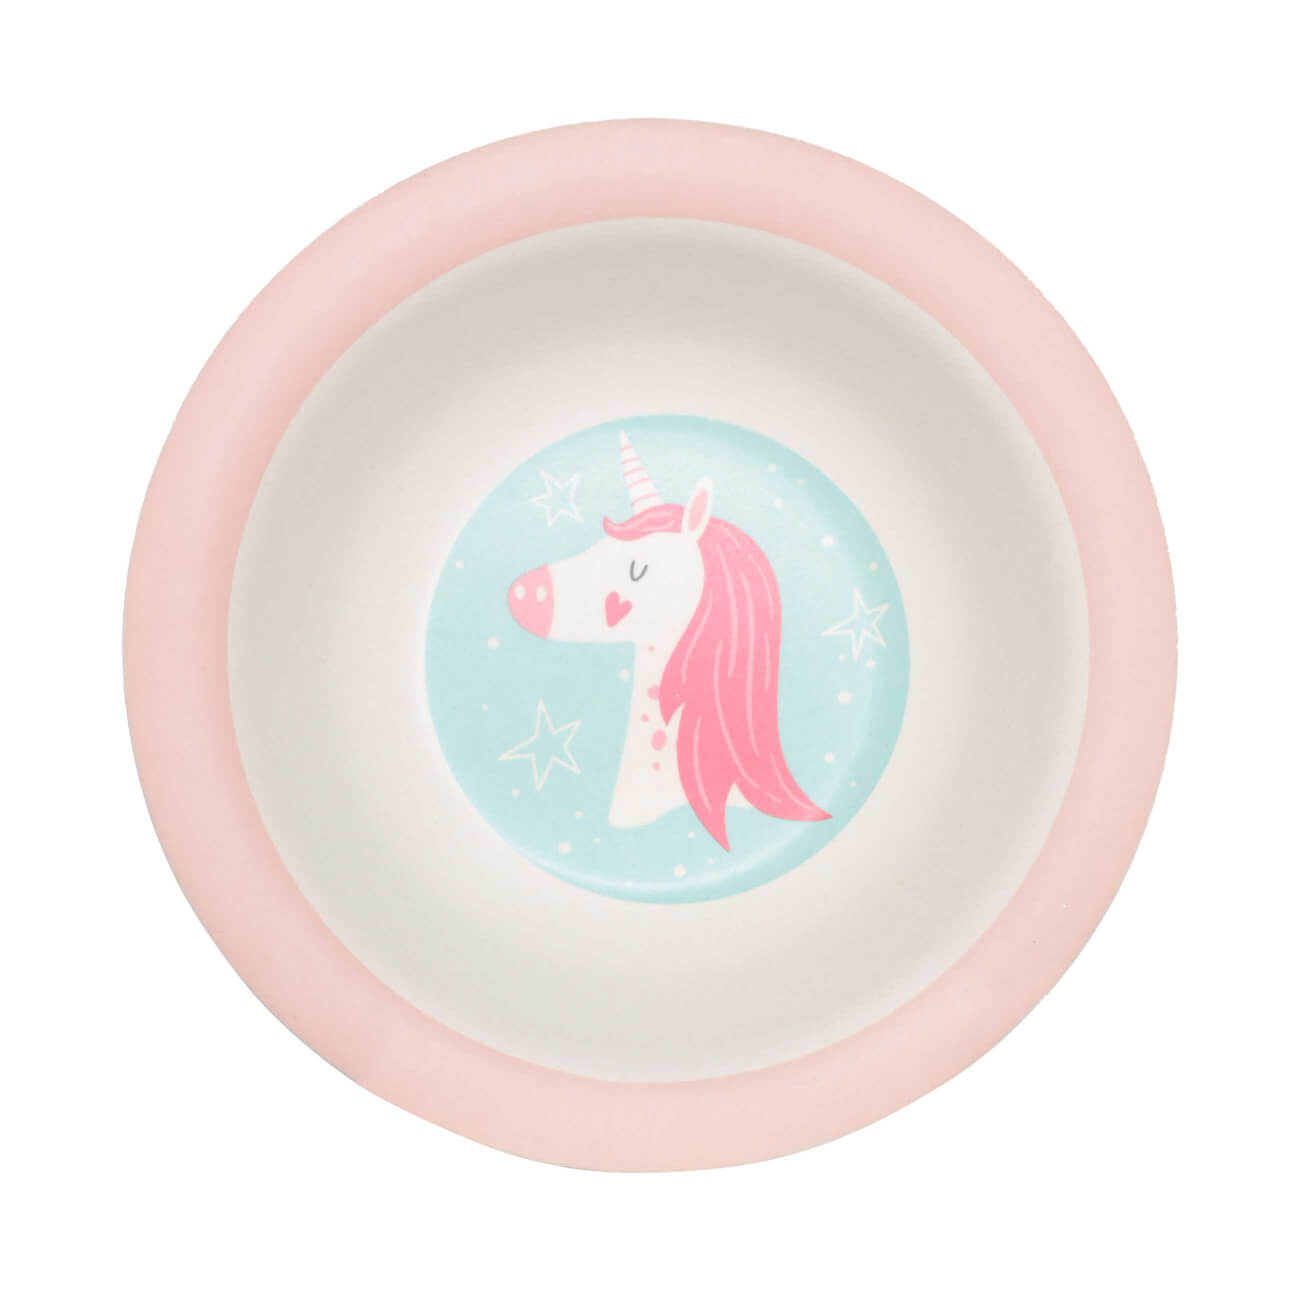 Тарелка суповая, детская, 15 см, бамбук, розово-мятная, Единорог и звезды, Unicorn тарелка детская из бамбука